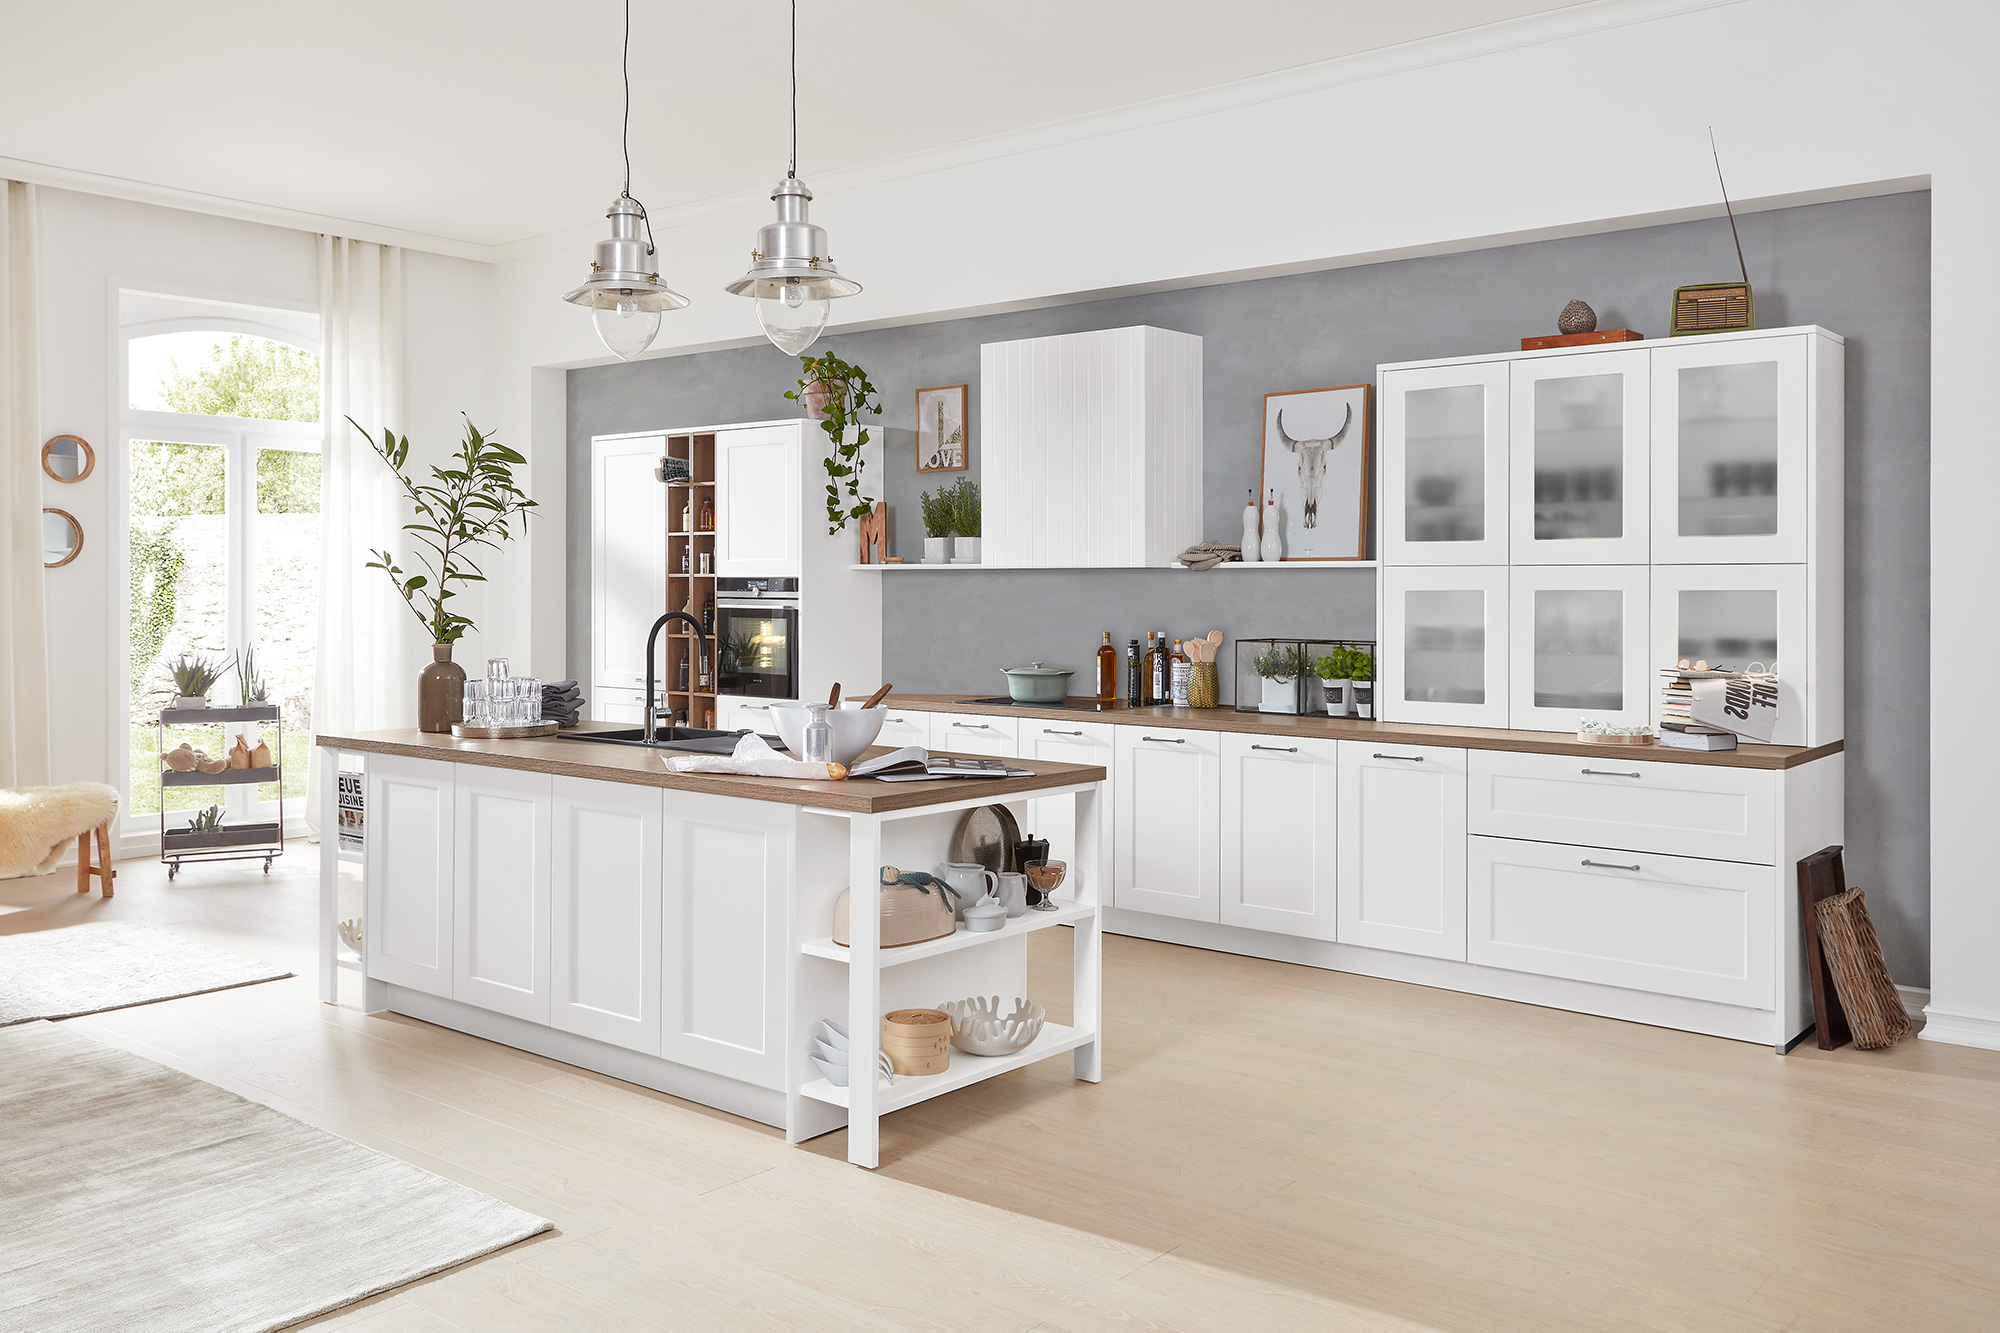 Interliving Küche weiß Landhaus mit elektrogeräten zweiteilig bei Wohn Schick